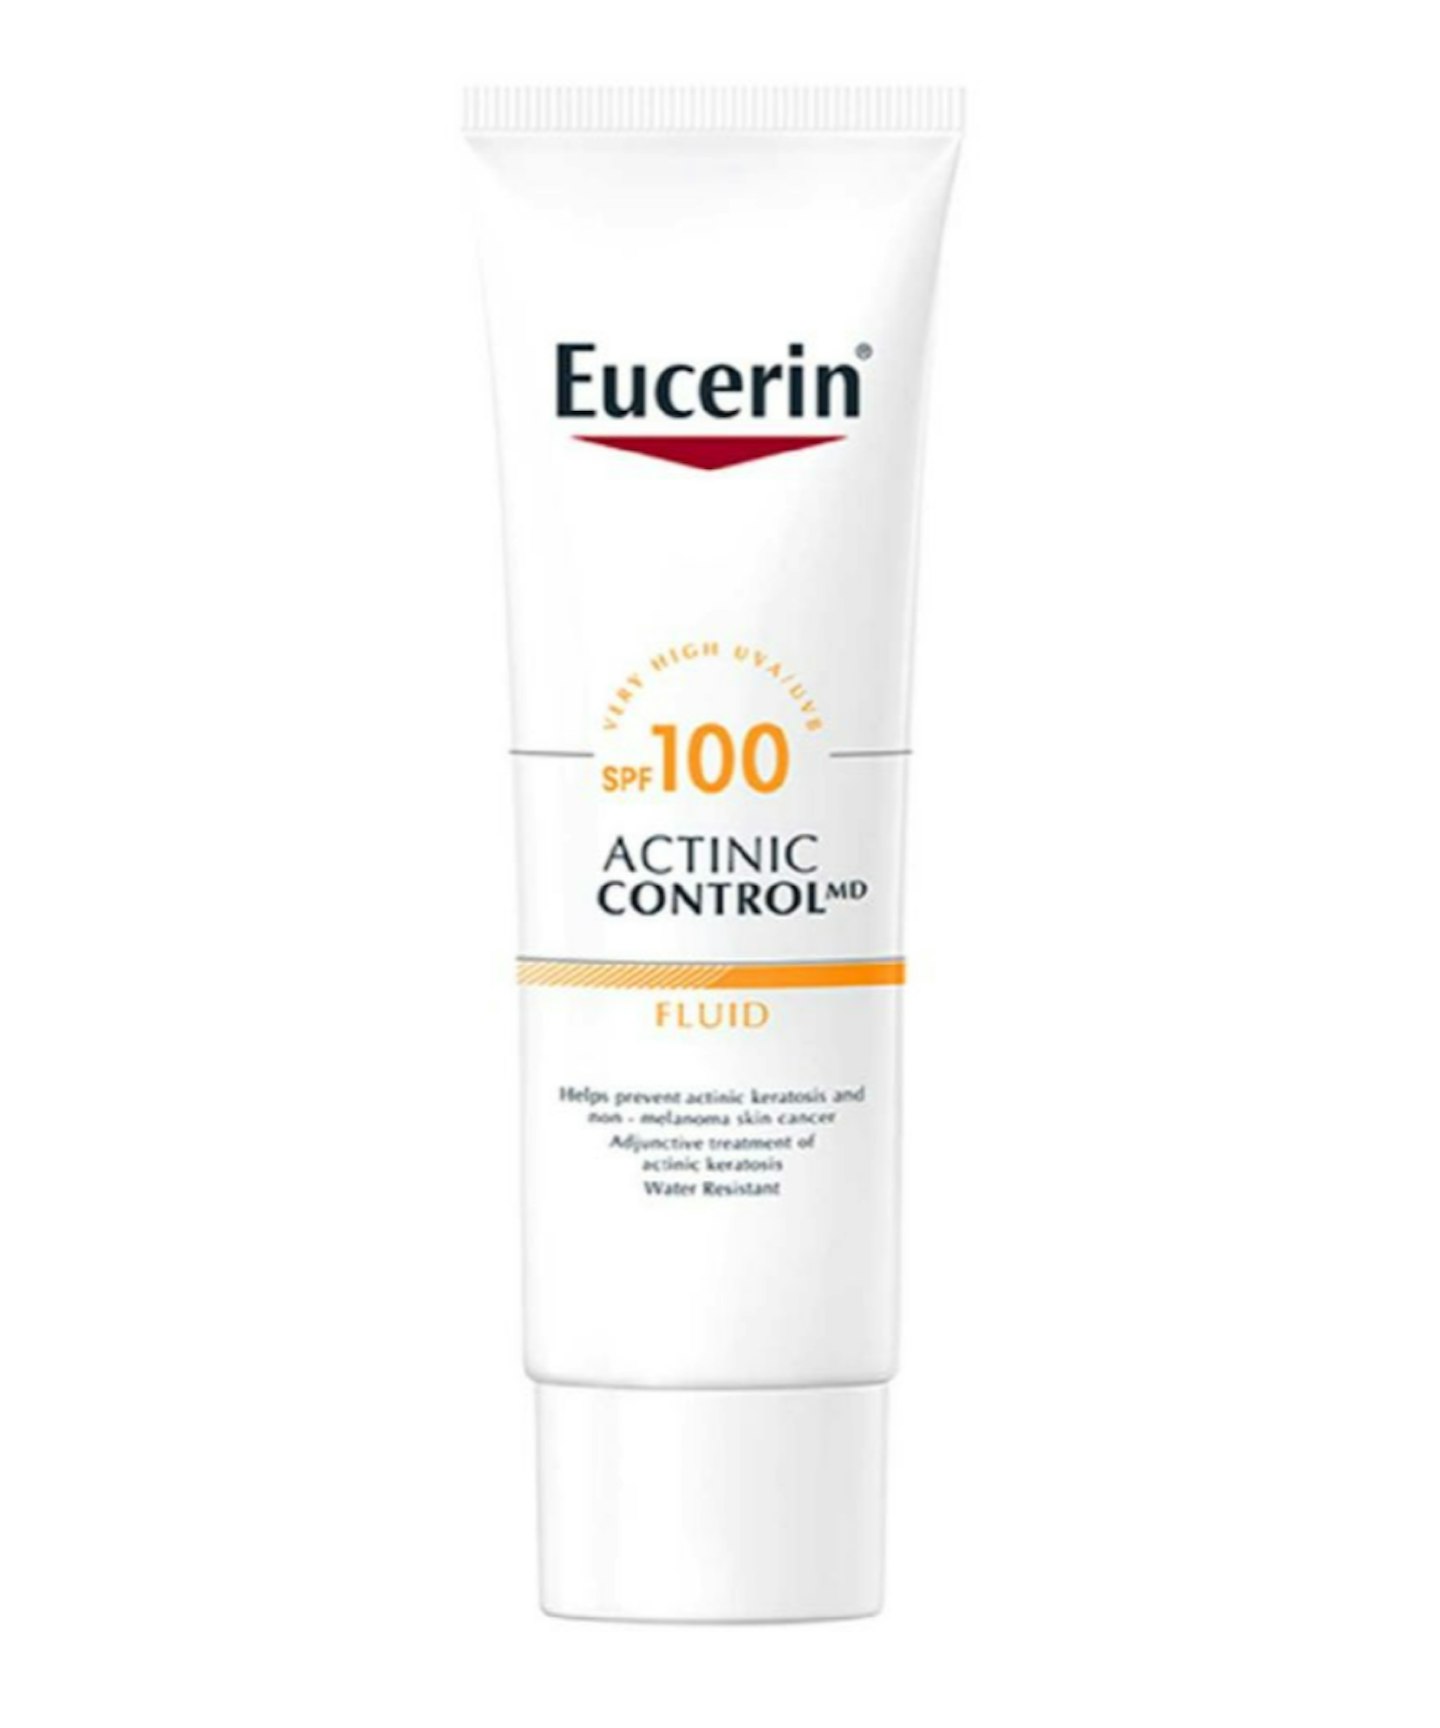 Eucerin Sun Actinic Control MD Sun Cream for Face & Body SPF 100